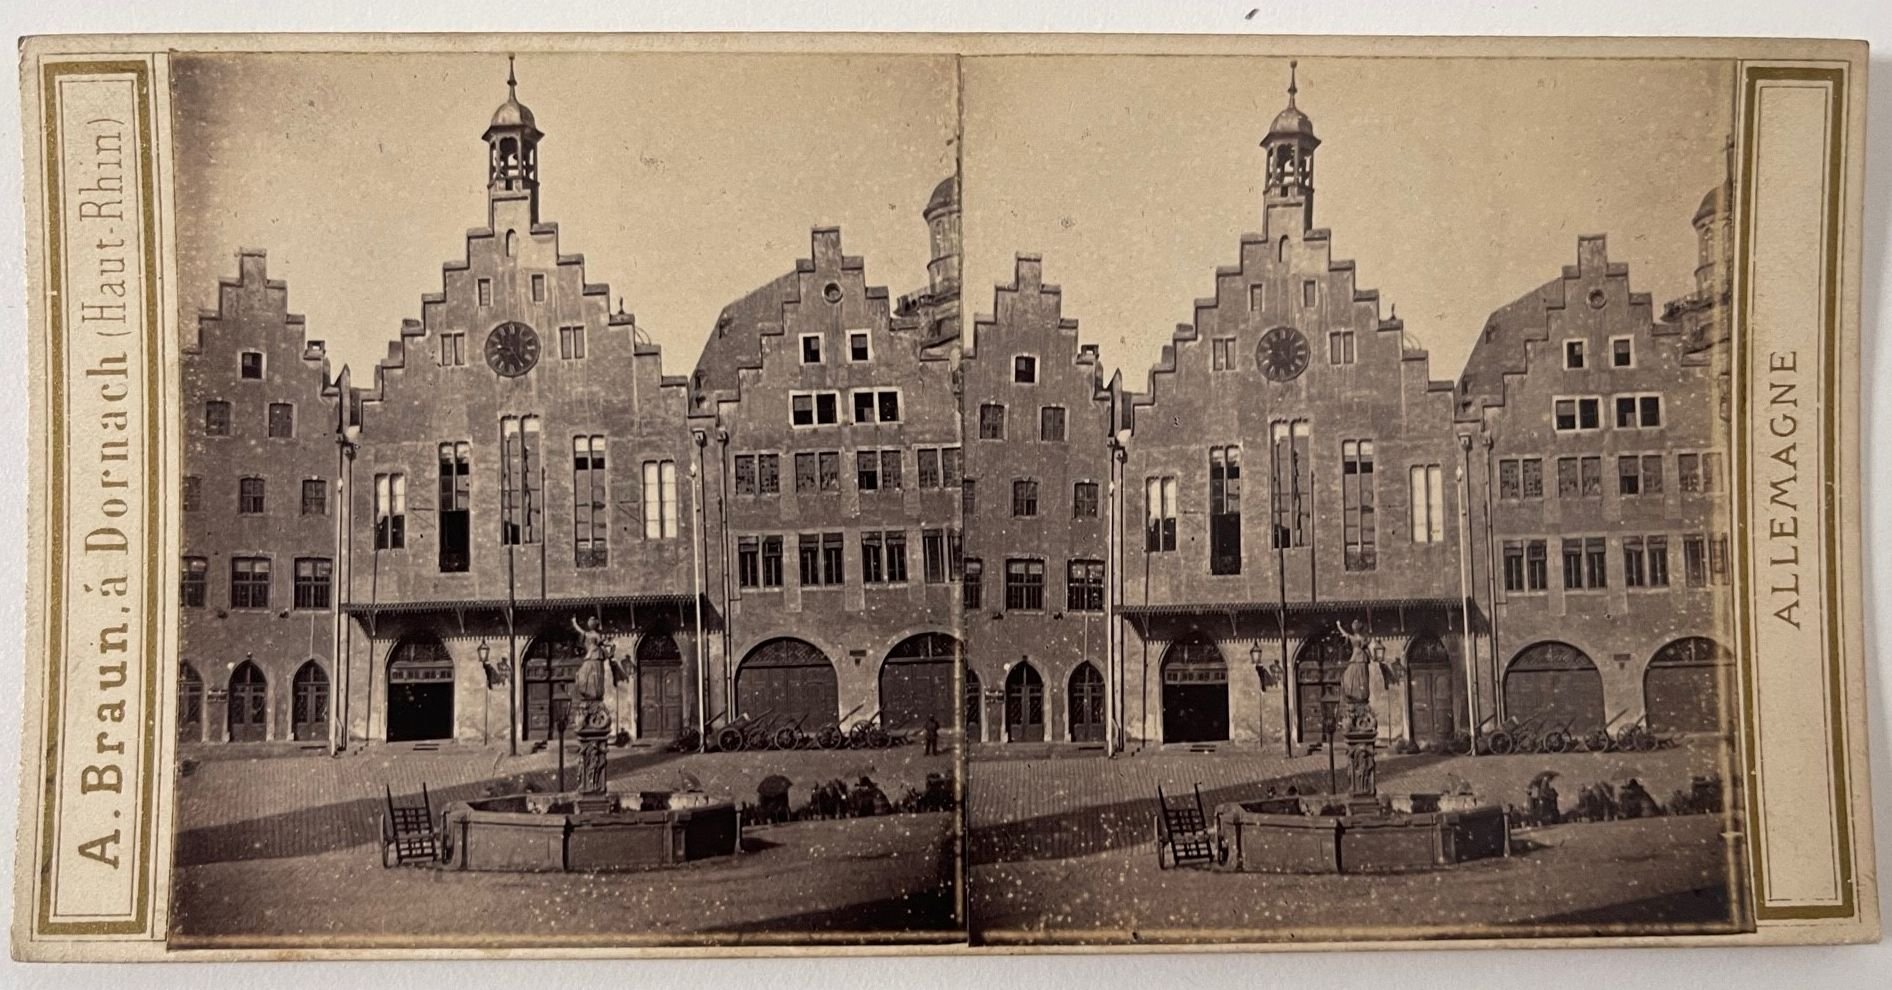 Stereobild, Adolphe Braun, Frankfurt a. M., No. 3526, Der Roemer, ca. 1865. (Taunus-Rhein-Main - Regionalgeschichtliche Sammlung Dr. Stefan Naas CC BY-NC-SA)